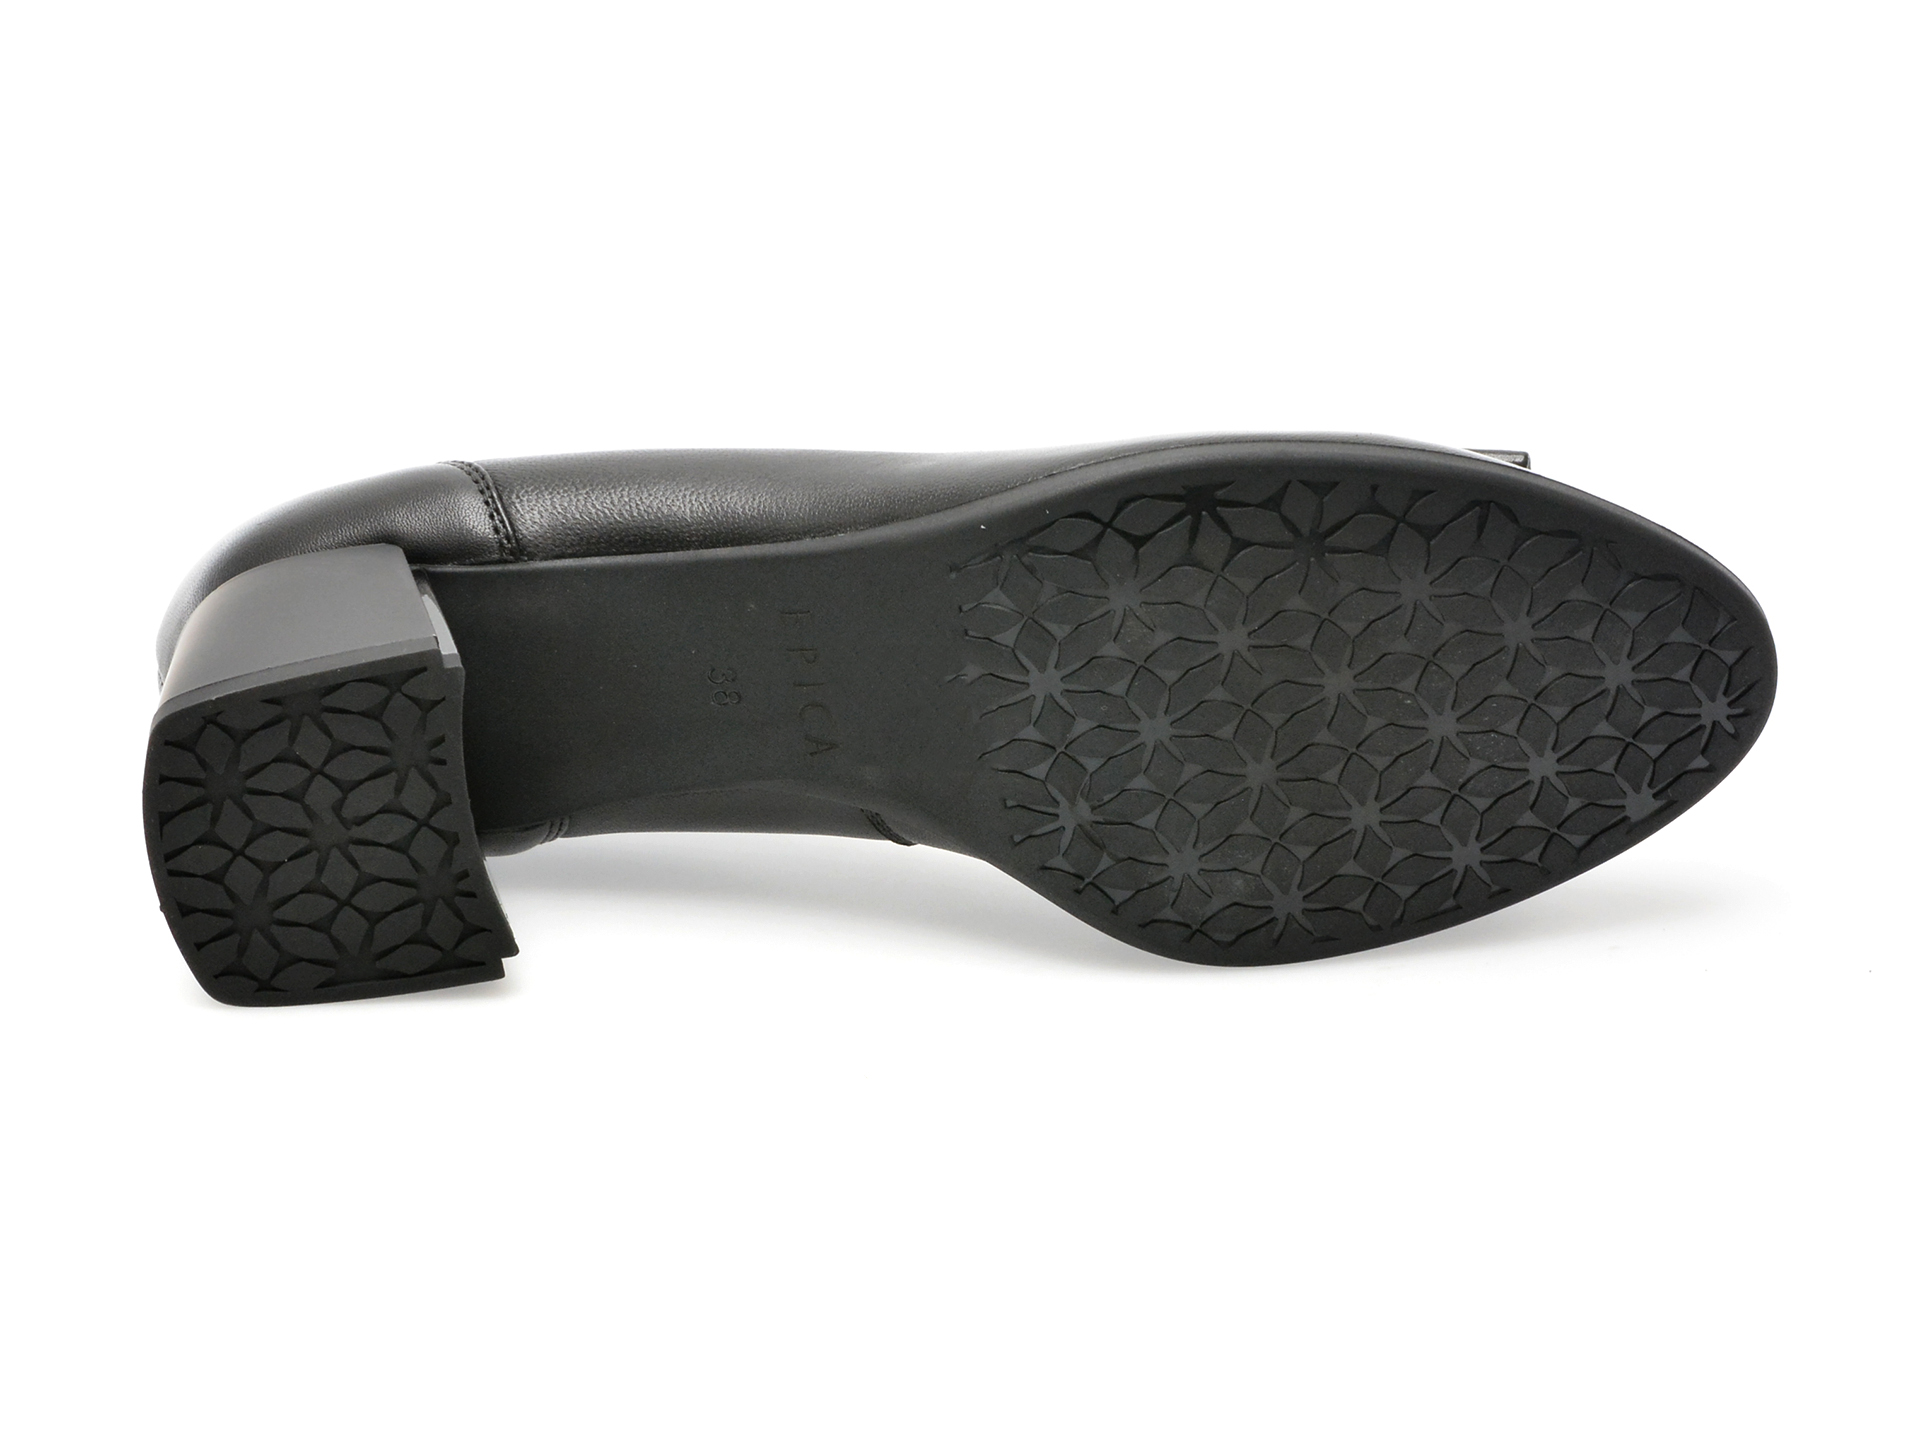 Poze Pantofi EPICA negri, 15772A, din piele naturala